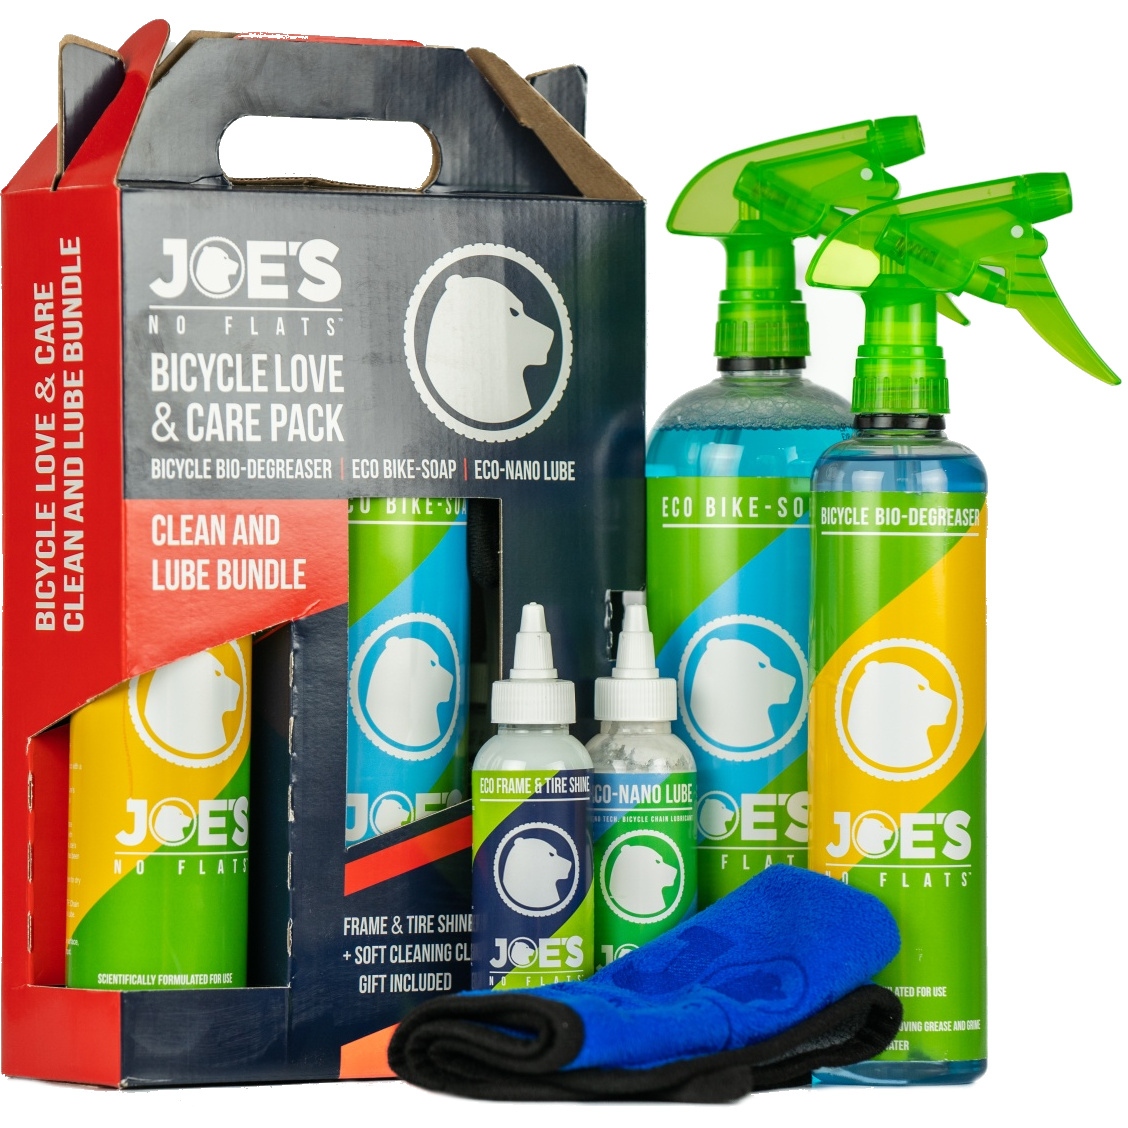 Joe's No-Flats Sealant Injector Dichtmittel-Injektor